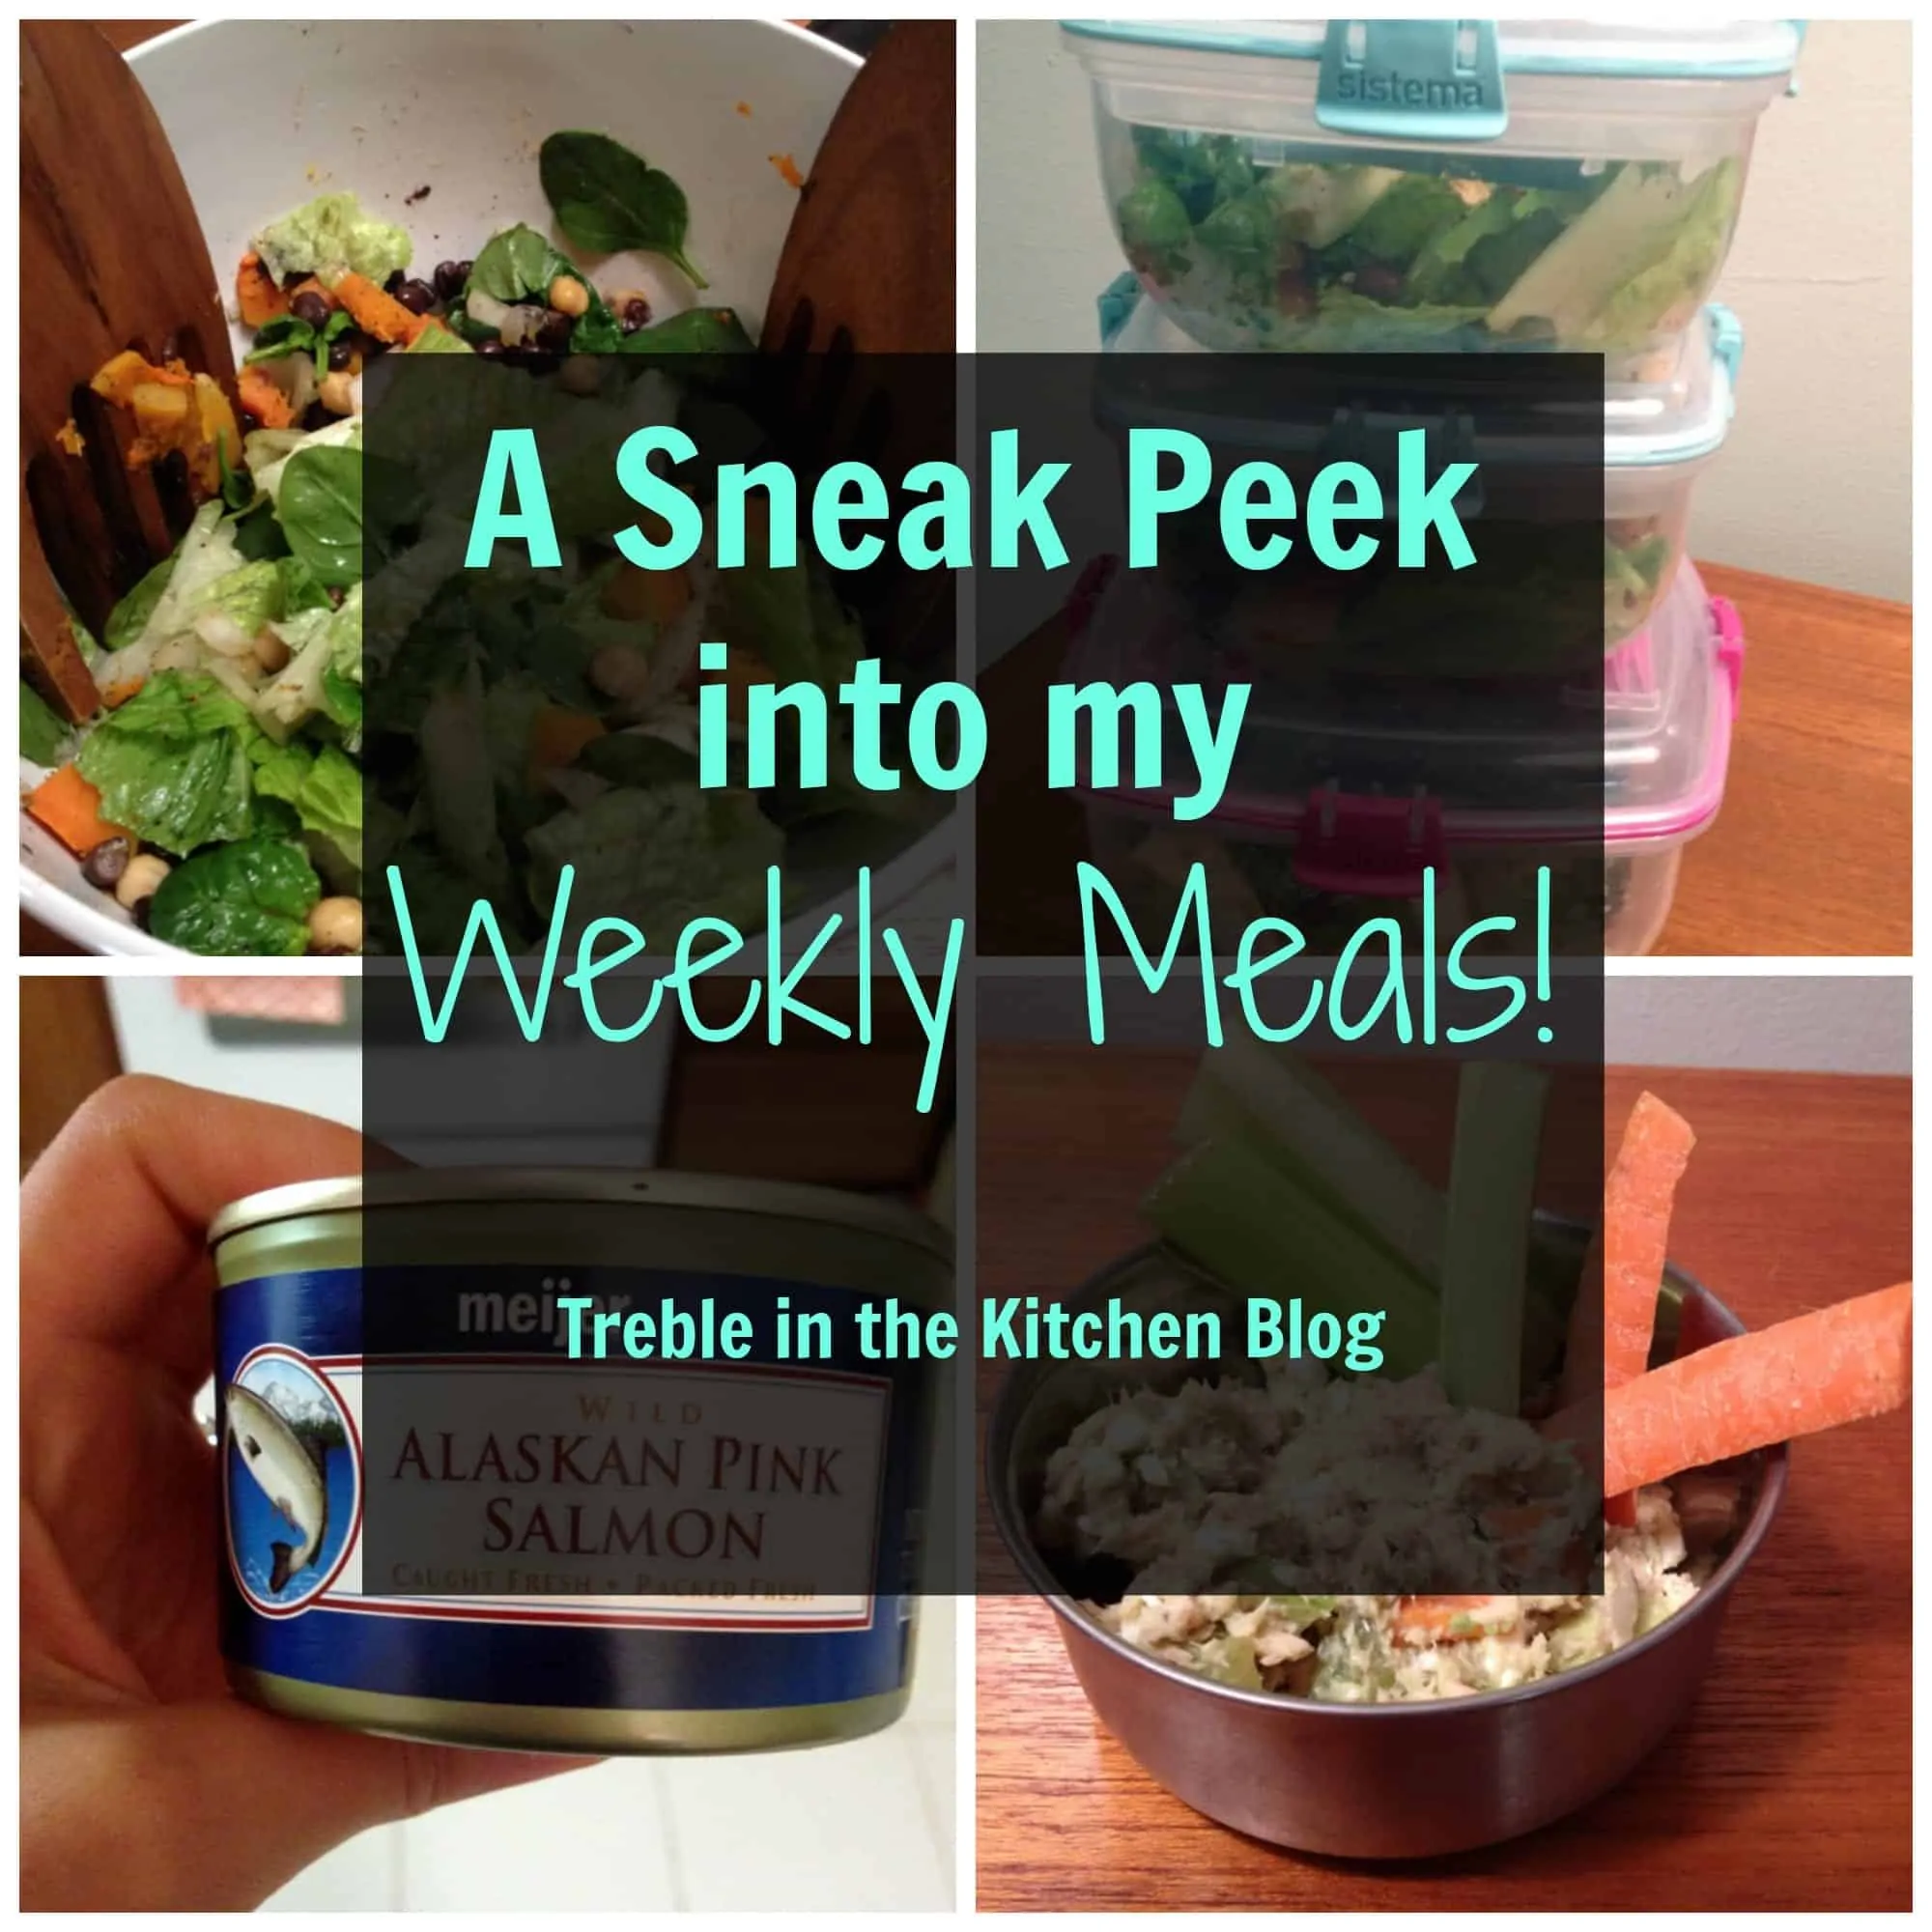 Sneak Peek into Weekly Meals via Treble in the Kitchen